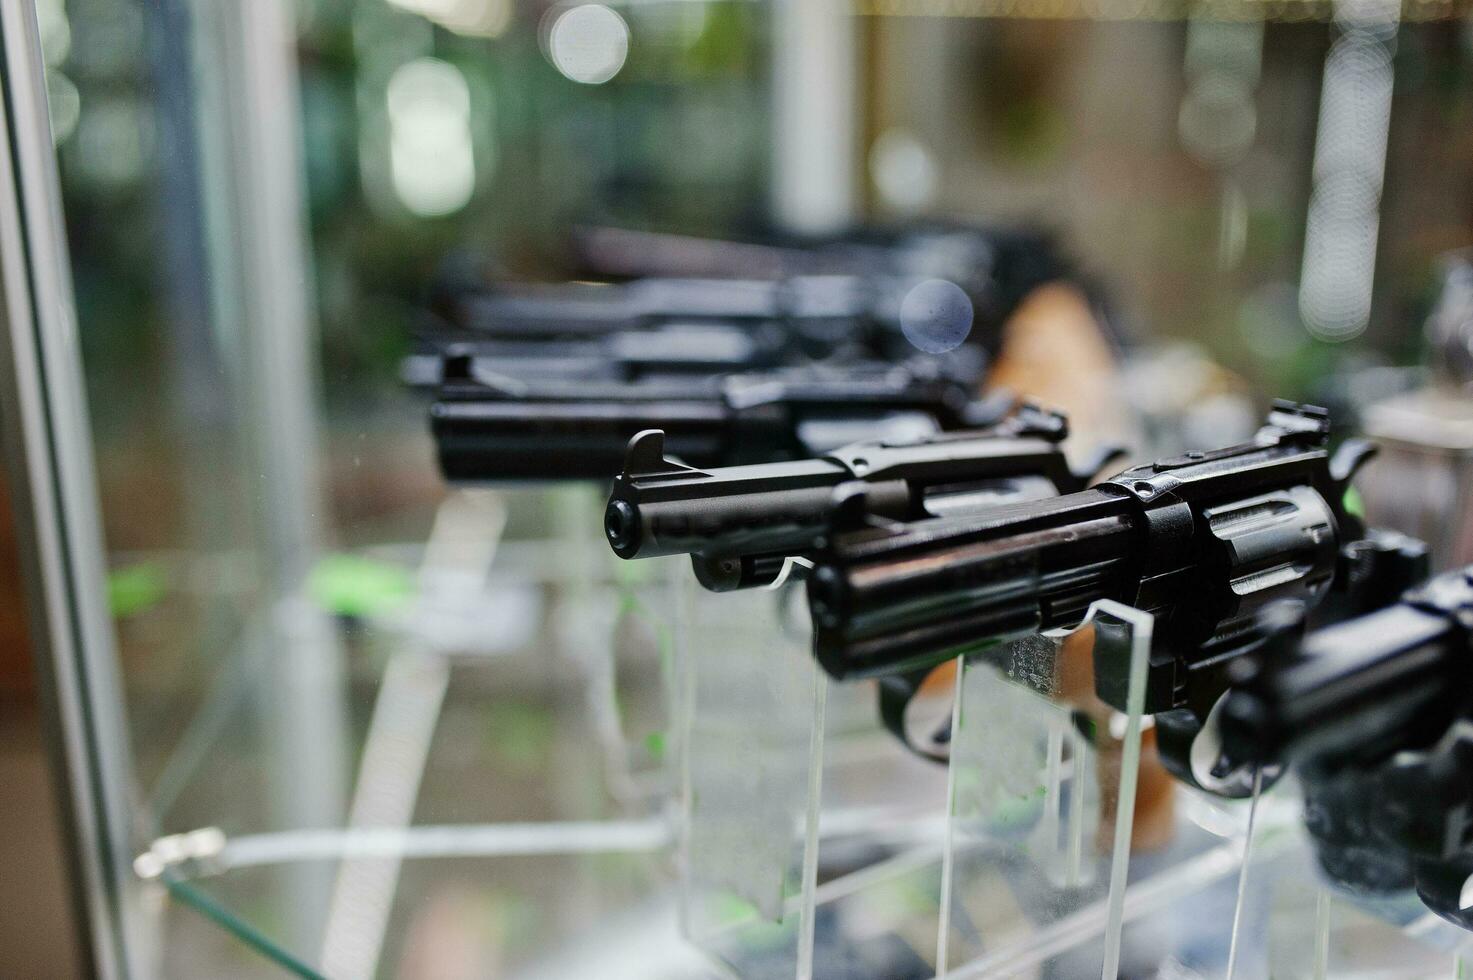 diferentes pistolas y revólveres en los estantes almacenan armas en el centro comercial. foto